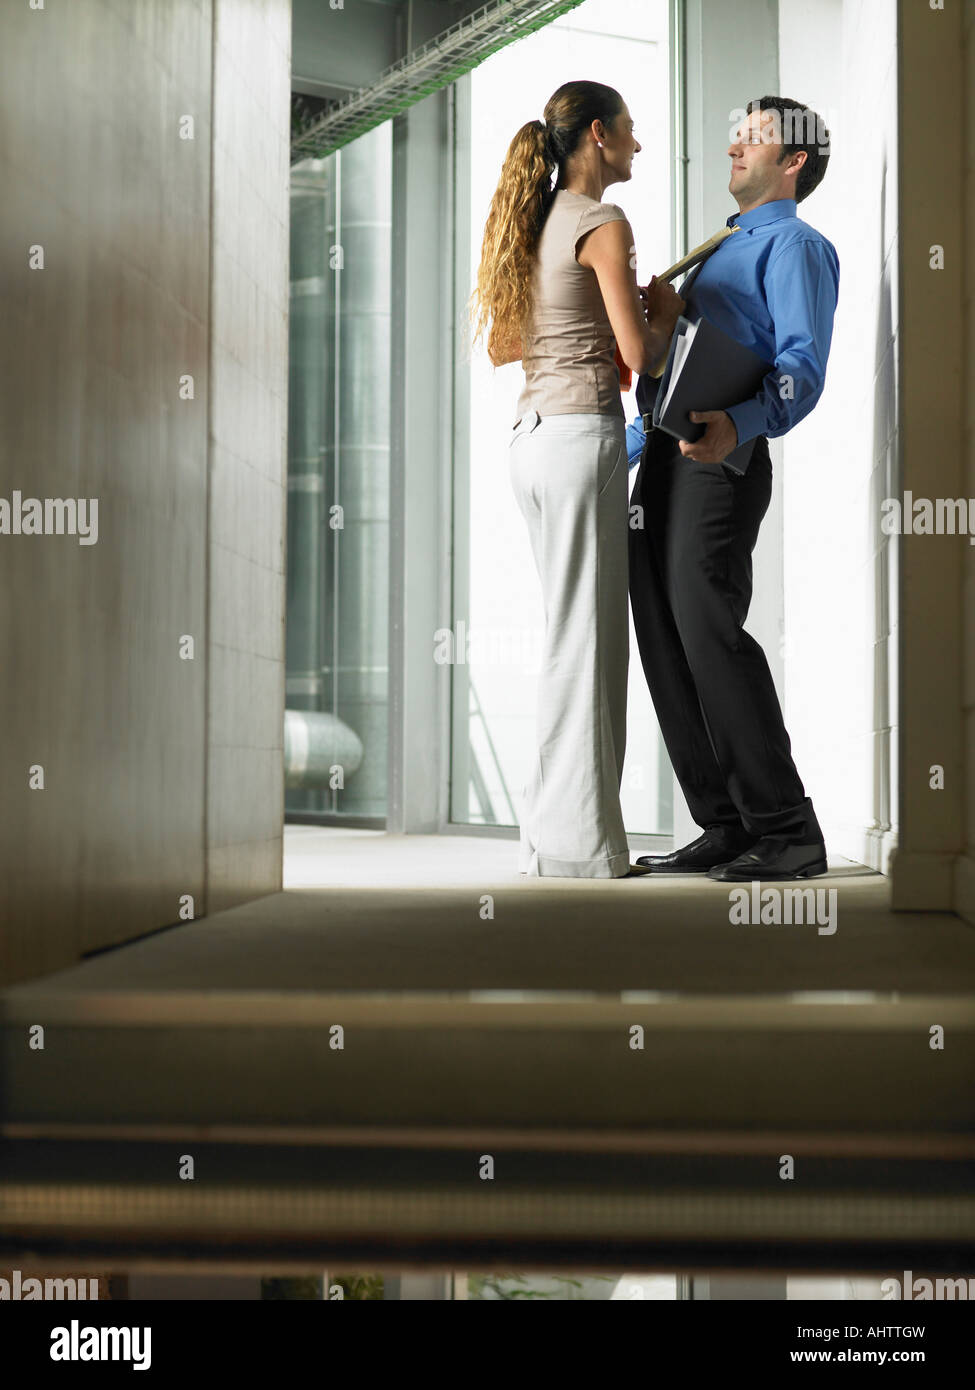 https://c8.alamy.com/comp/AHTTGW/a-woman-talking-to-a-man-in-a-hallway-AHTTGW.jpg